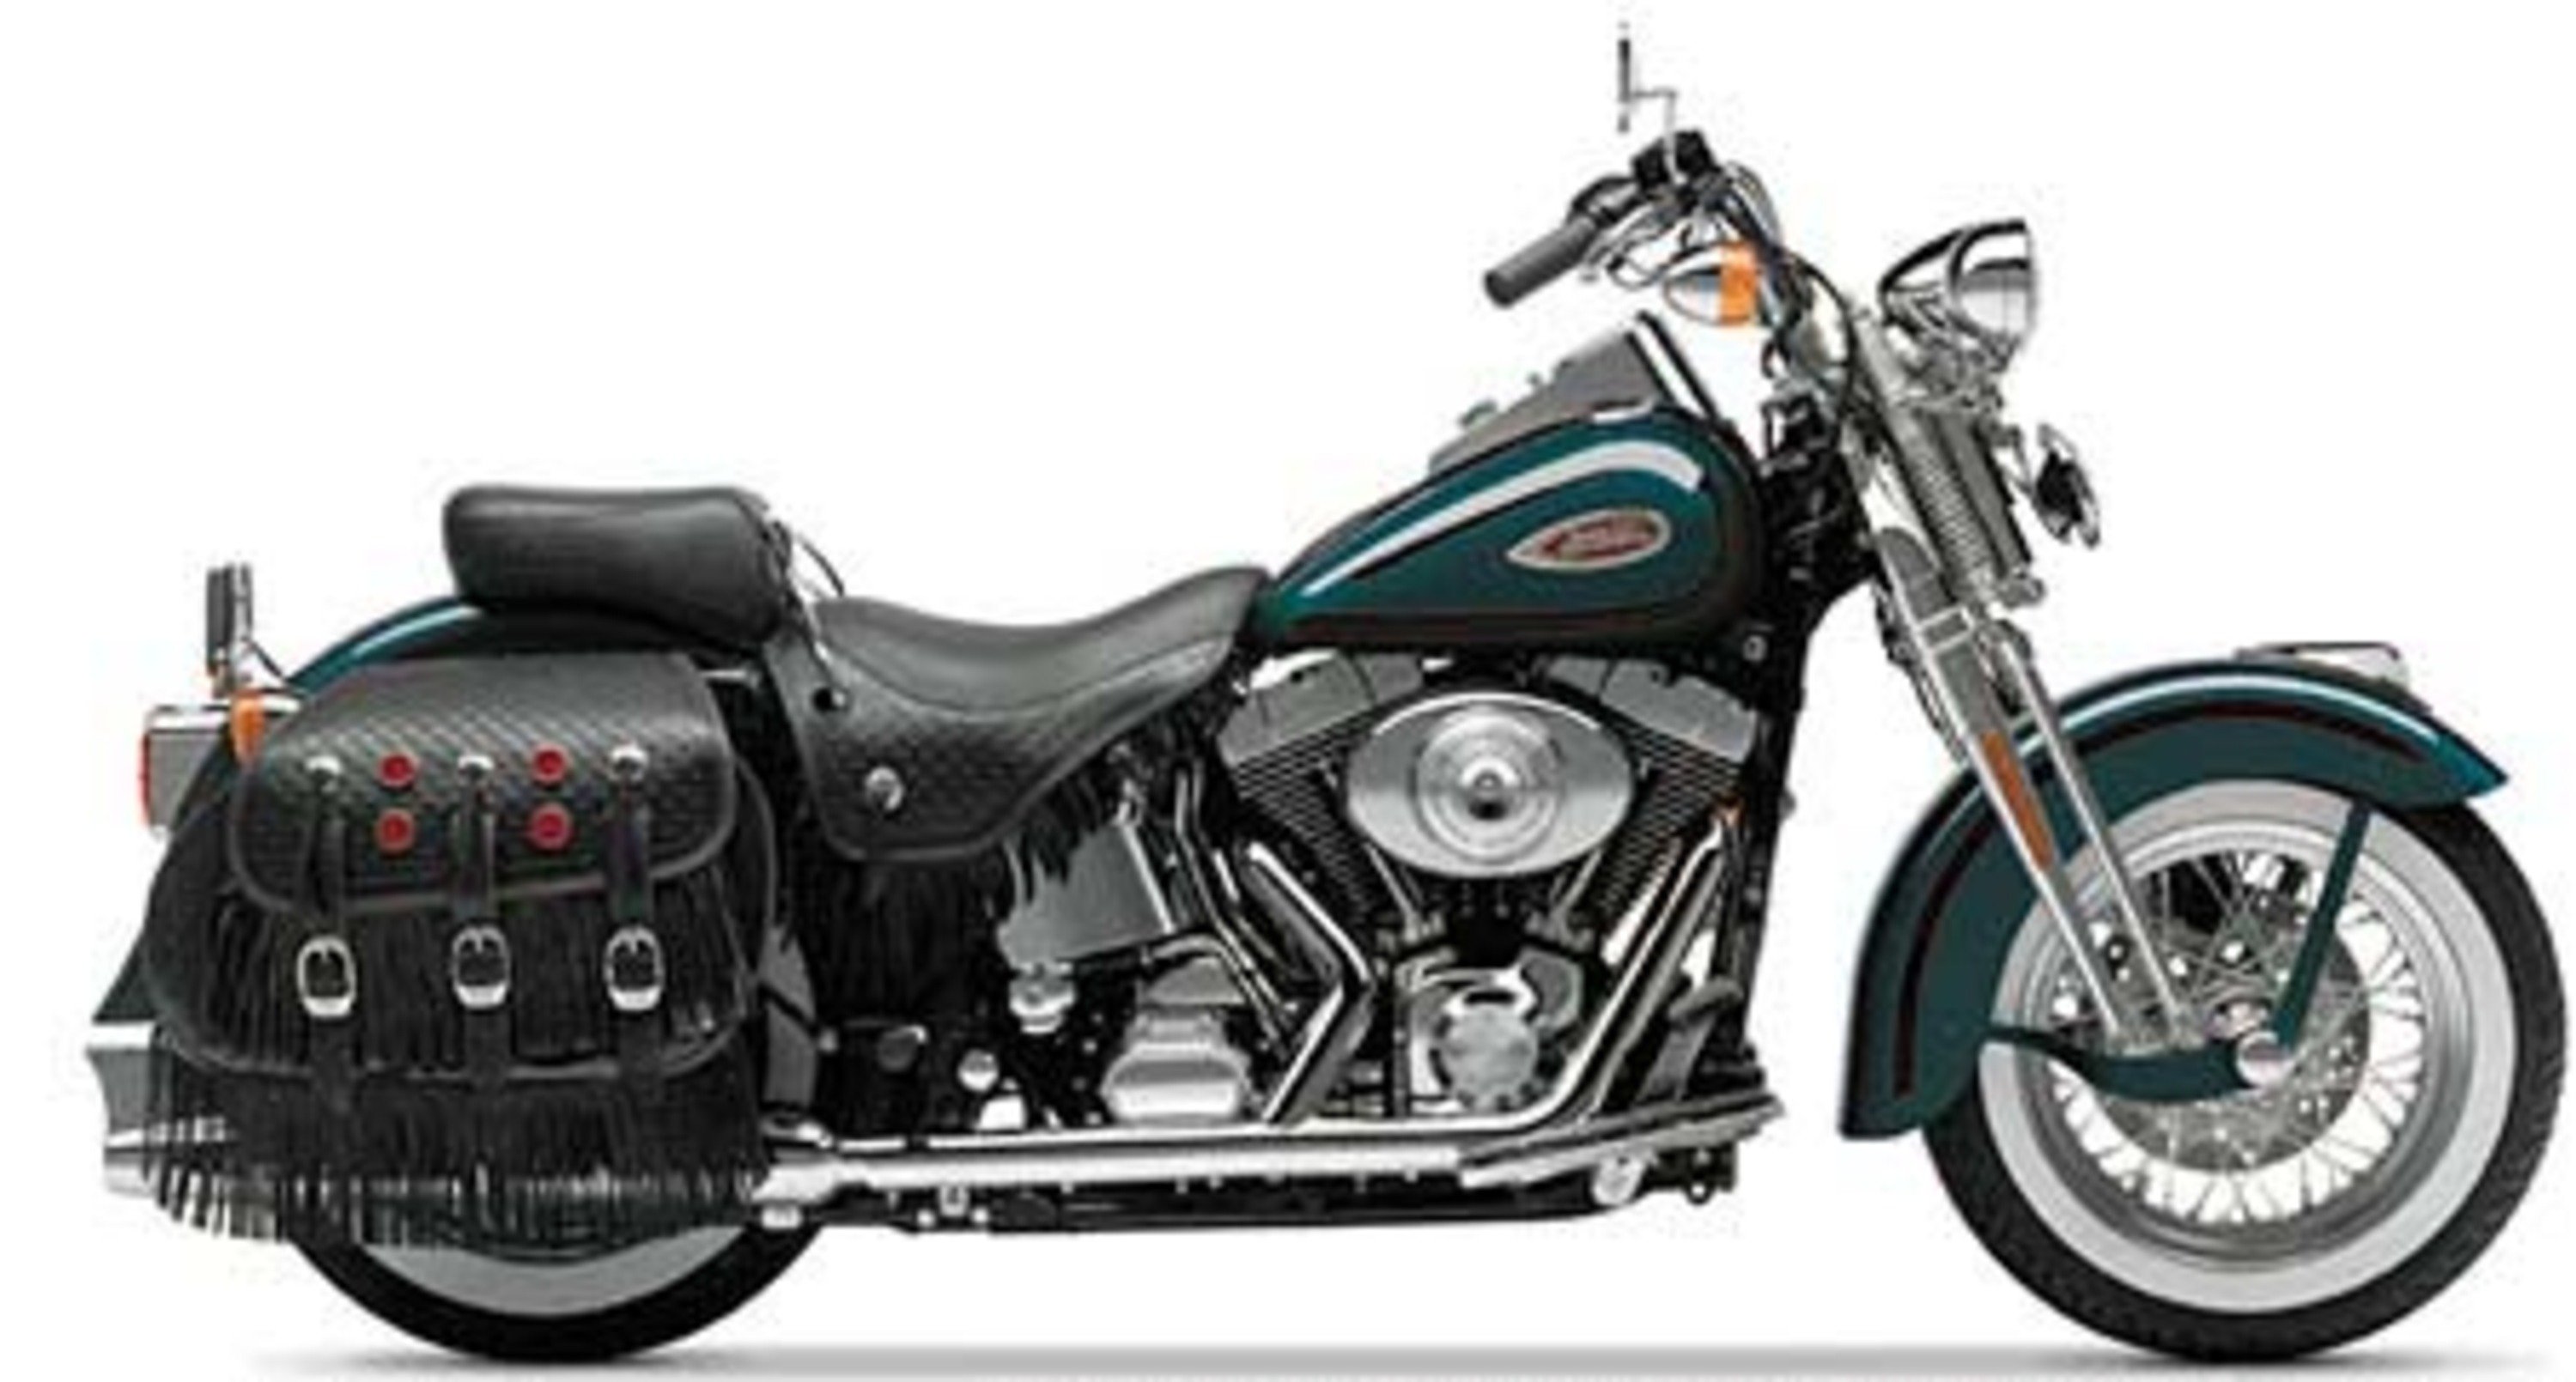 Harley-Davidson Softail 1340 Heritage Springer (1996 - 98) - FLSTS